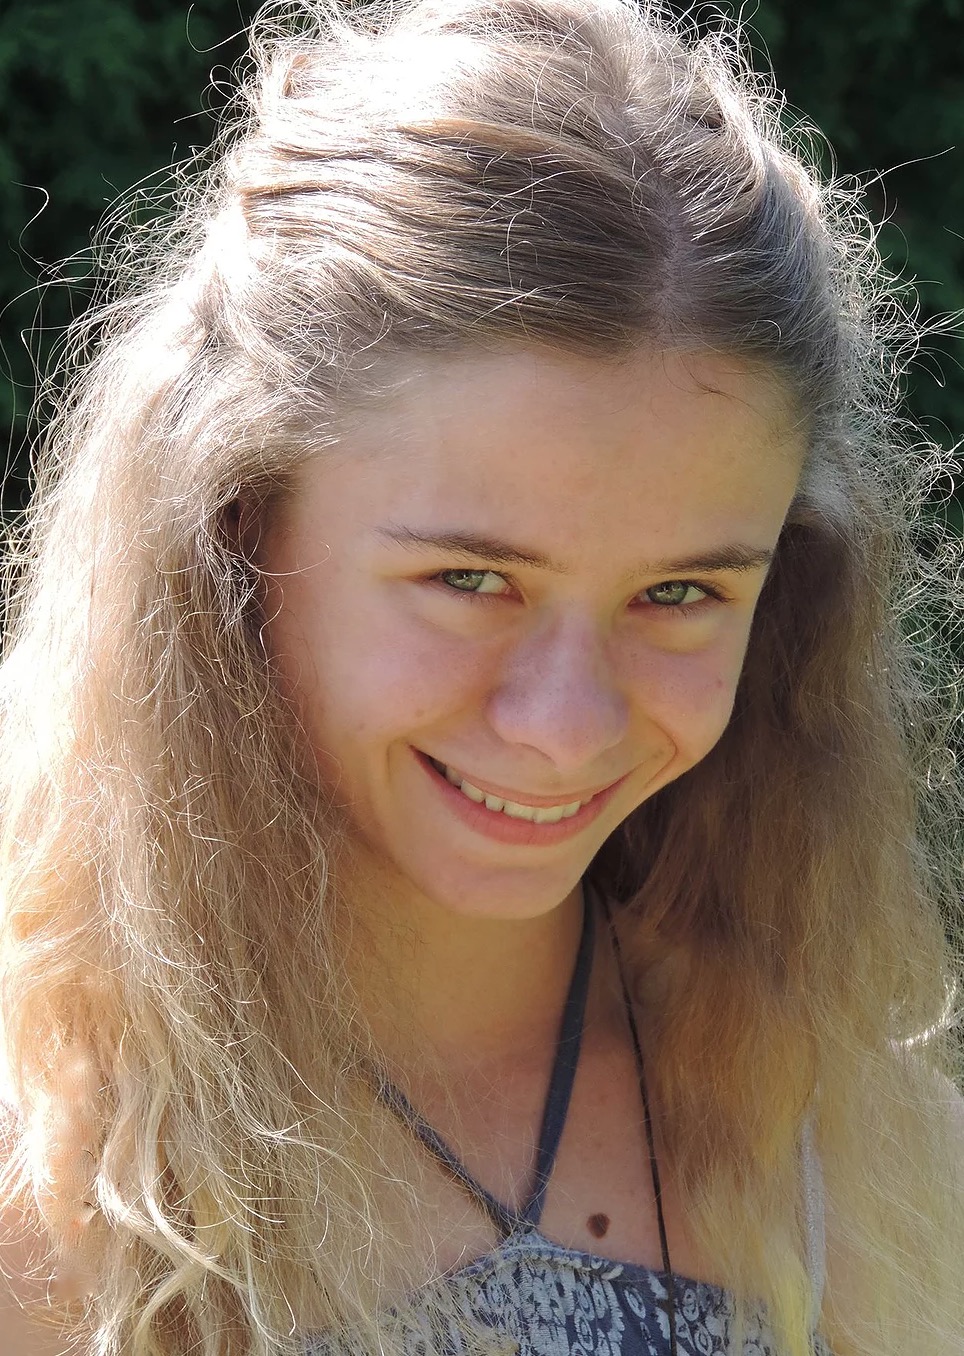 Christina Meier von Dreien – Ein 16-jähriges Mädchen im Dienste des Friedens und des Lichtes